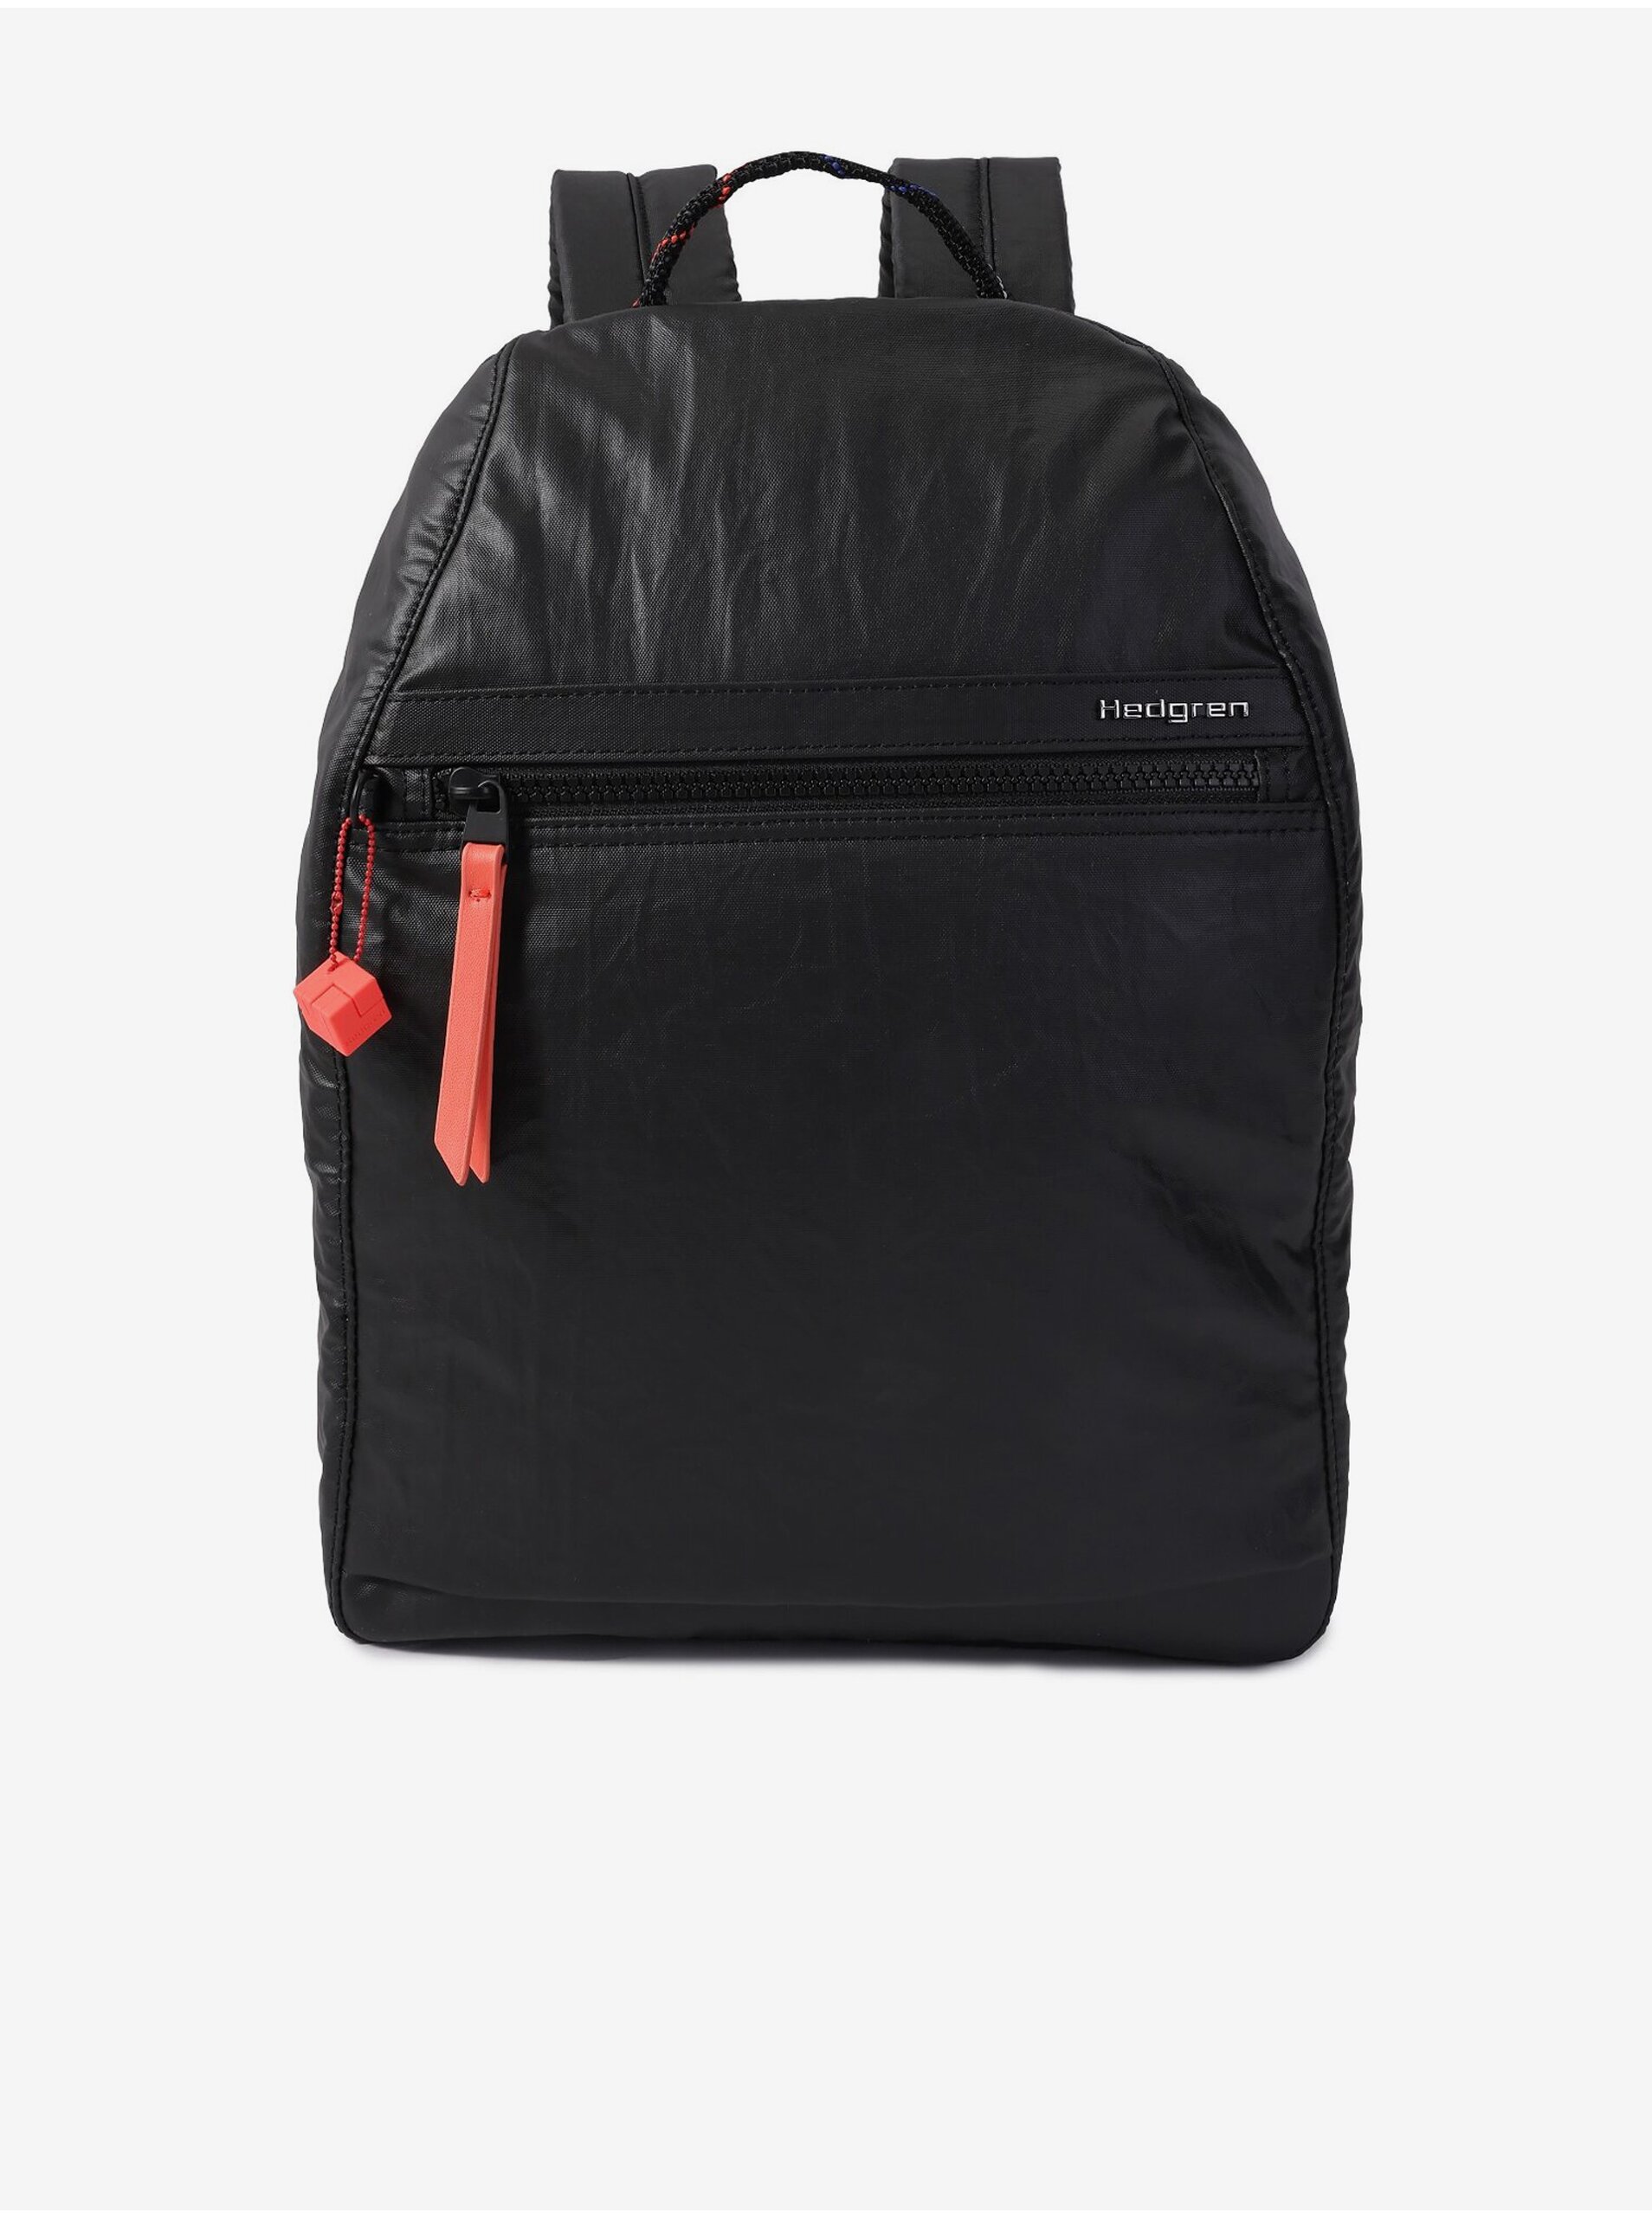 E-shop Čierny ruksak Hedgren Vogue L